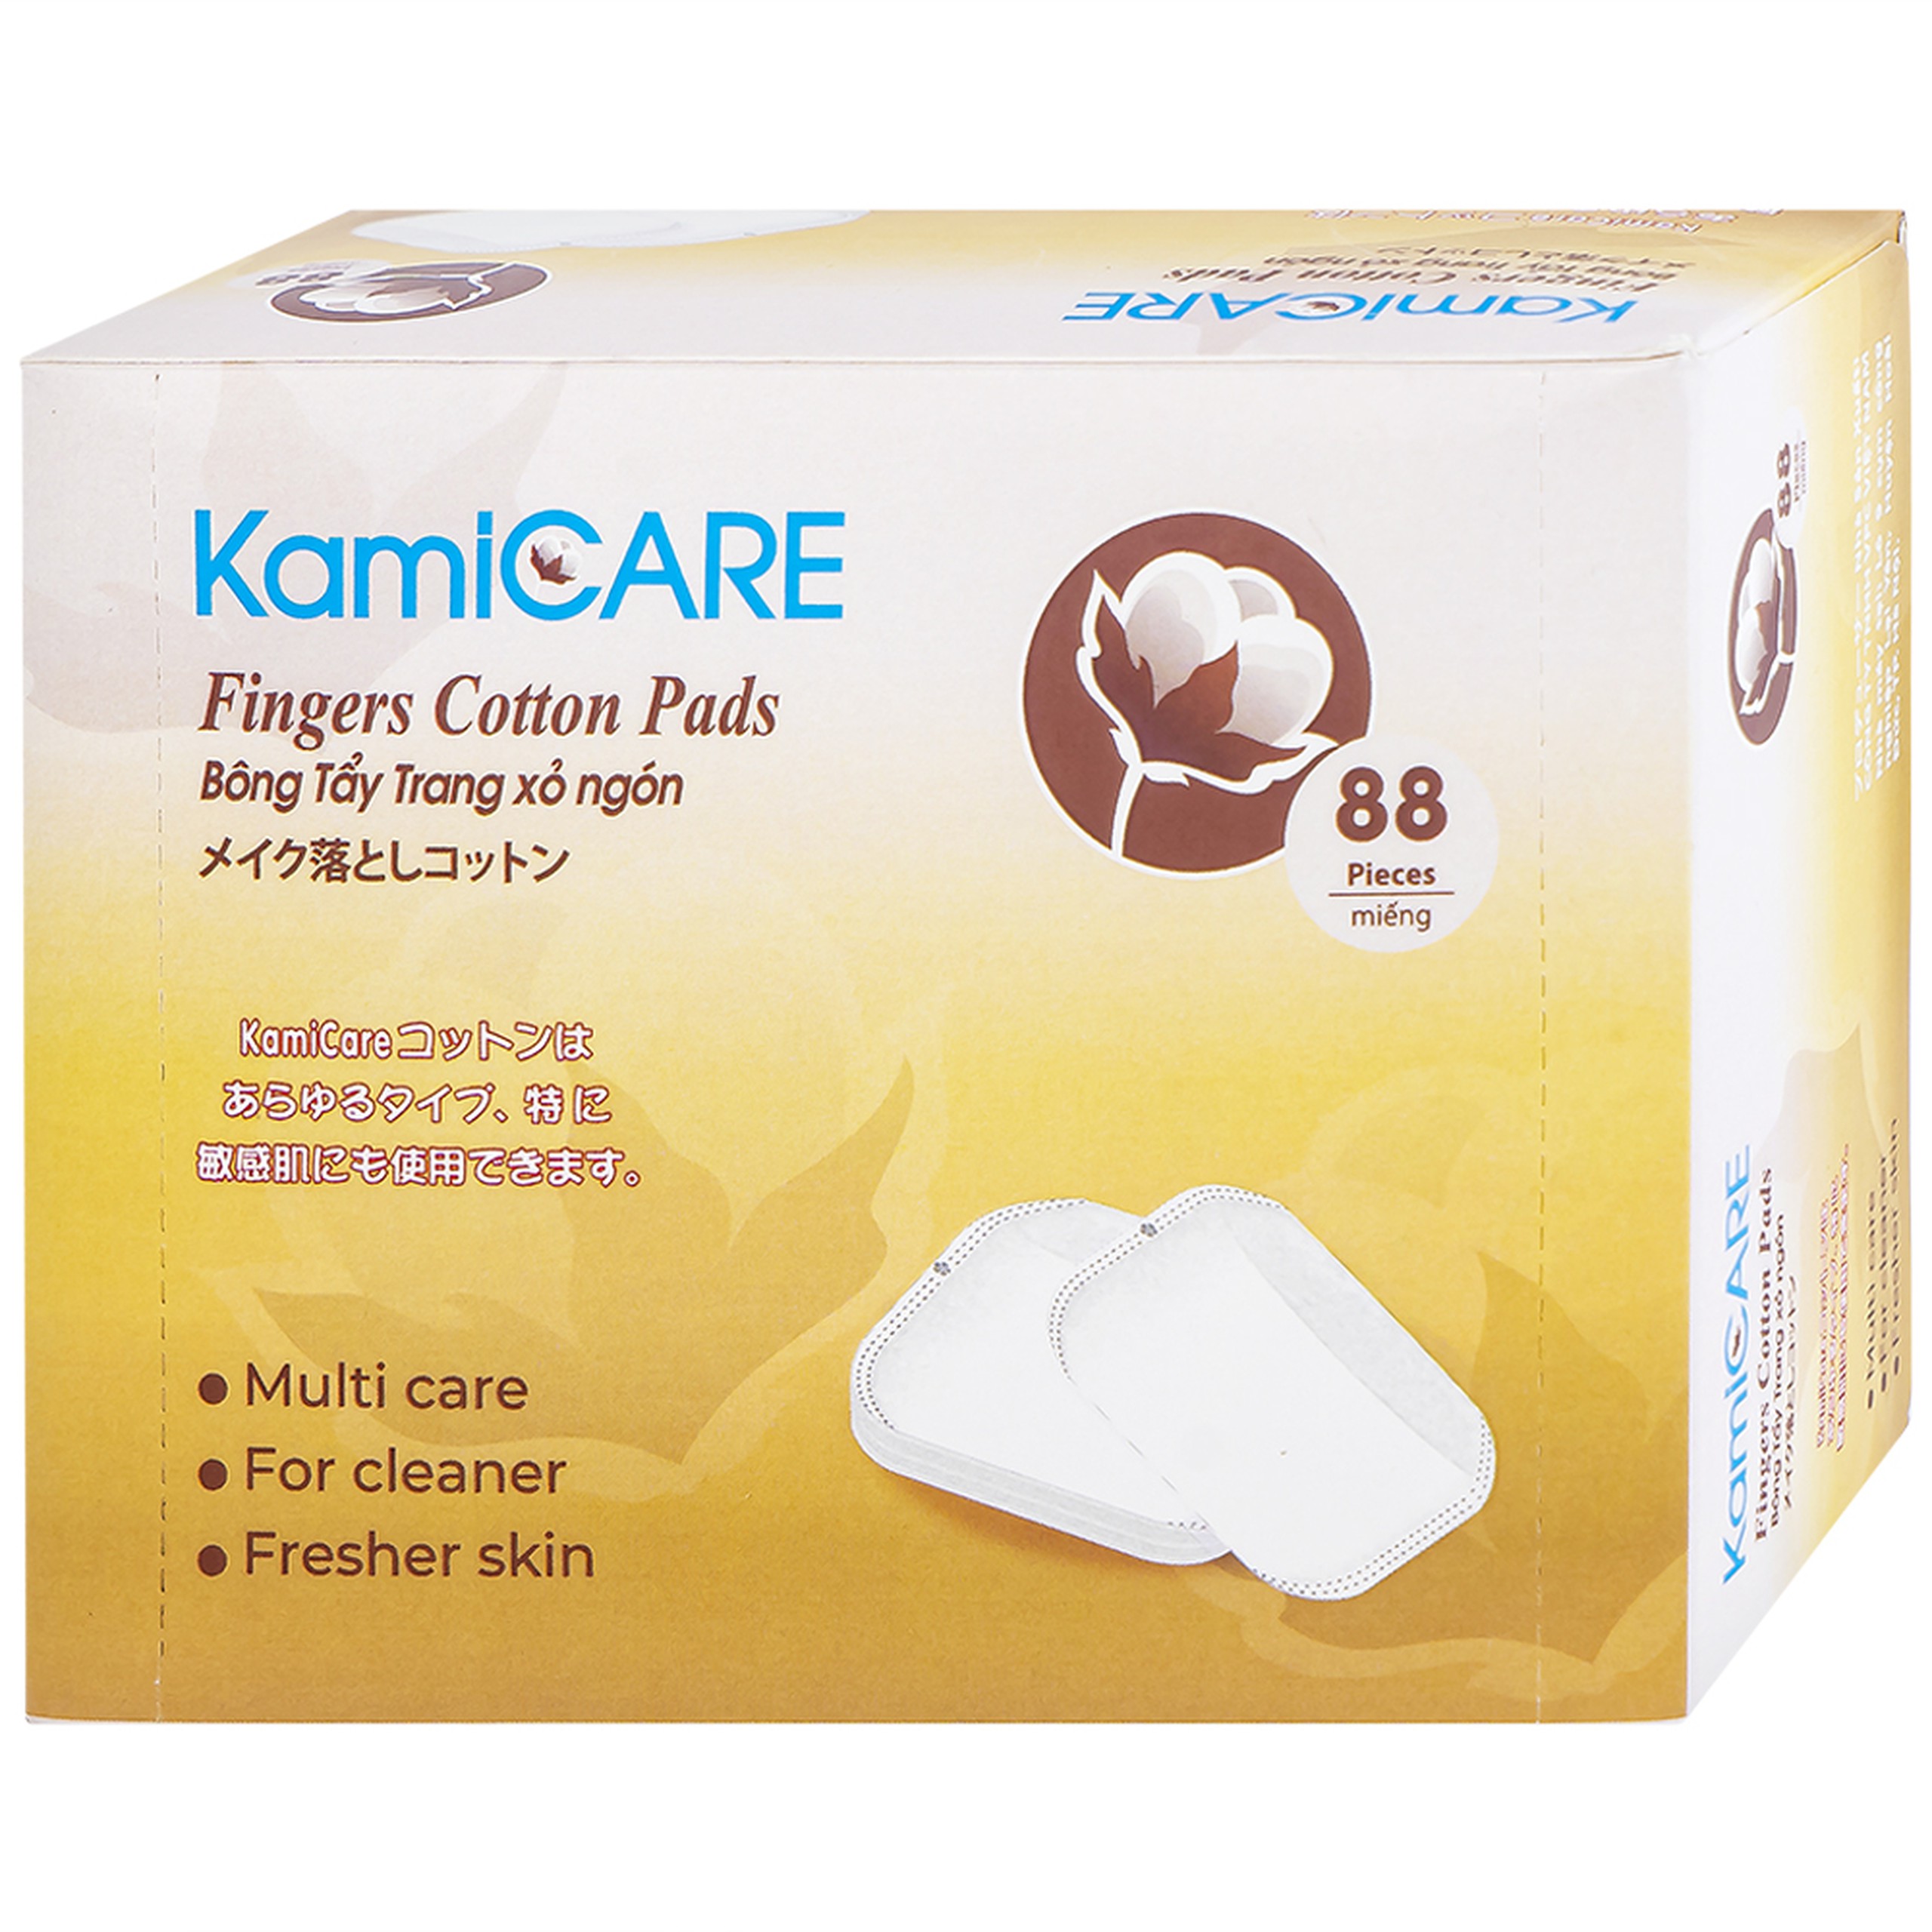 Bông tẩy trang xỏ ngón KamiCARE 100% cotton thấm hút tốt, làm  sạch bụi bẩn và tế bào chết trên da (88 miếng)